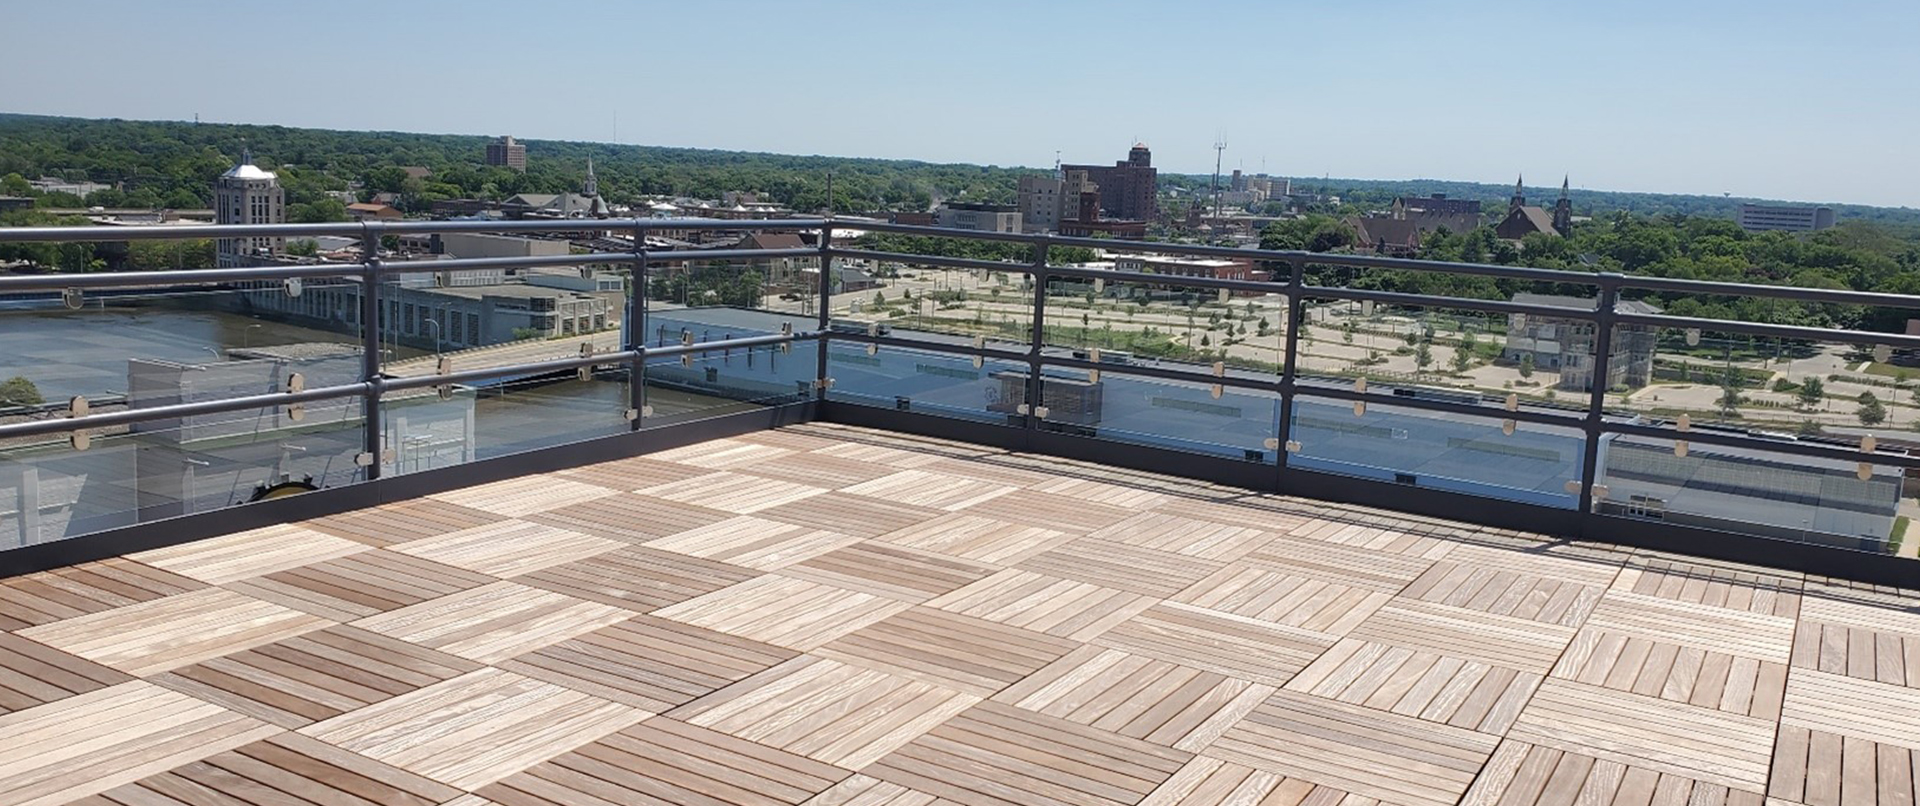 Wood Tile Rooftop Overlooking Rock River